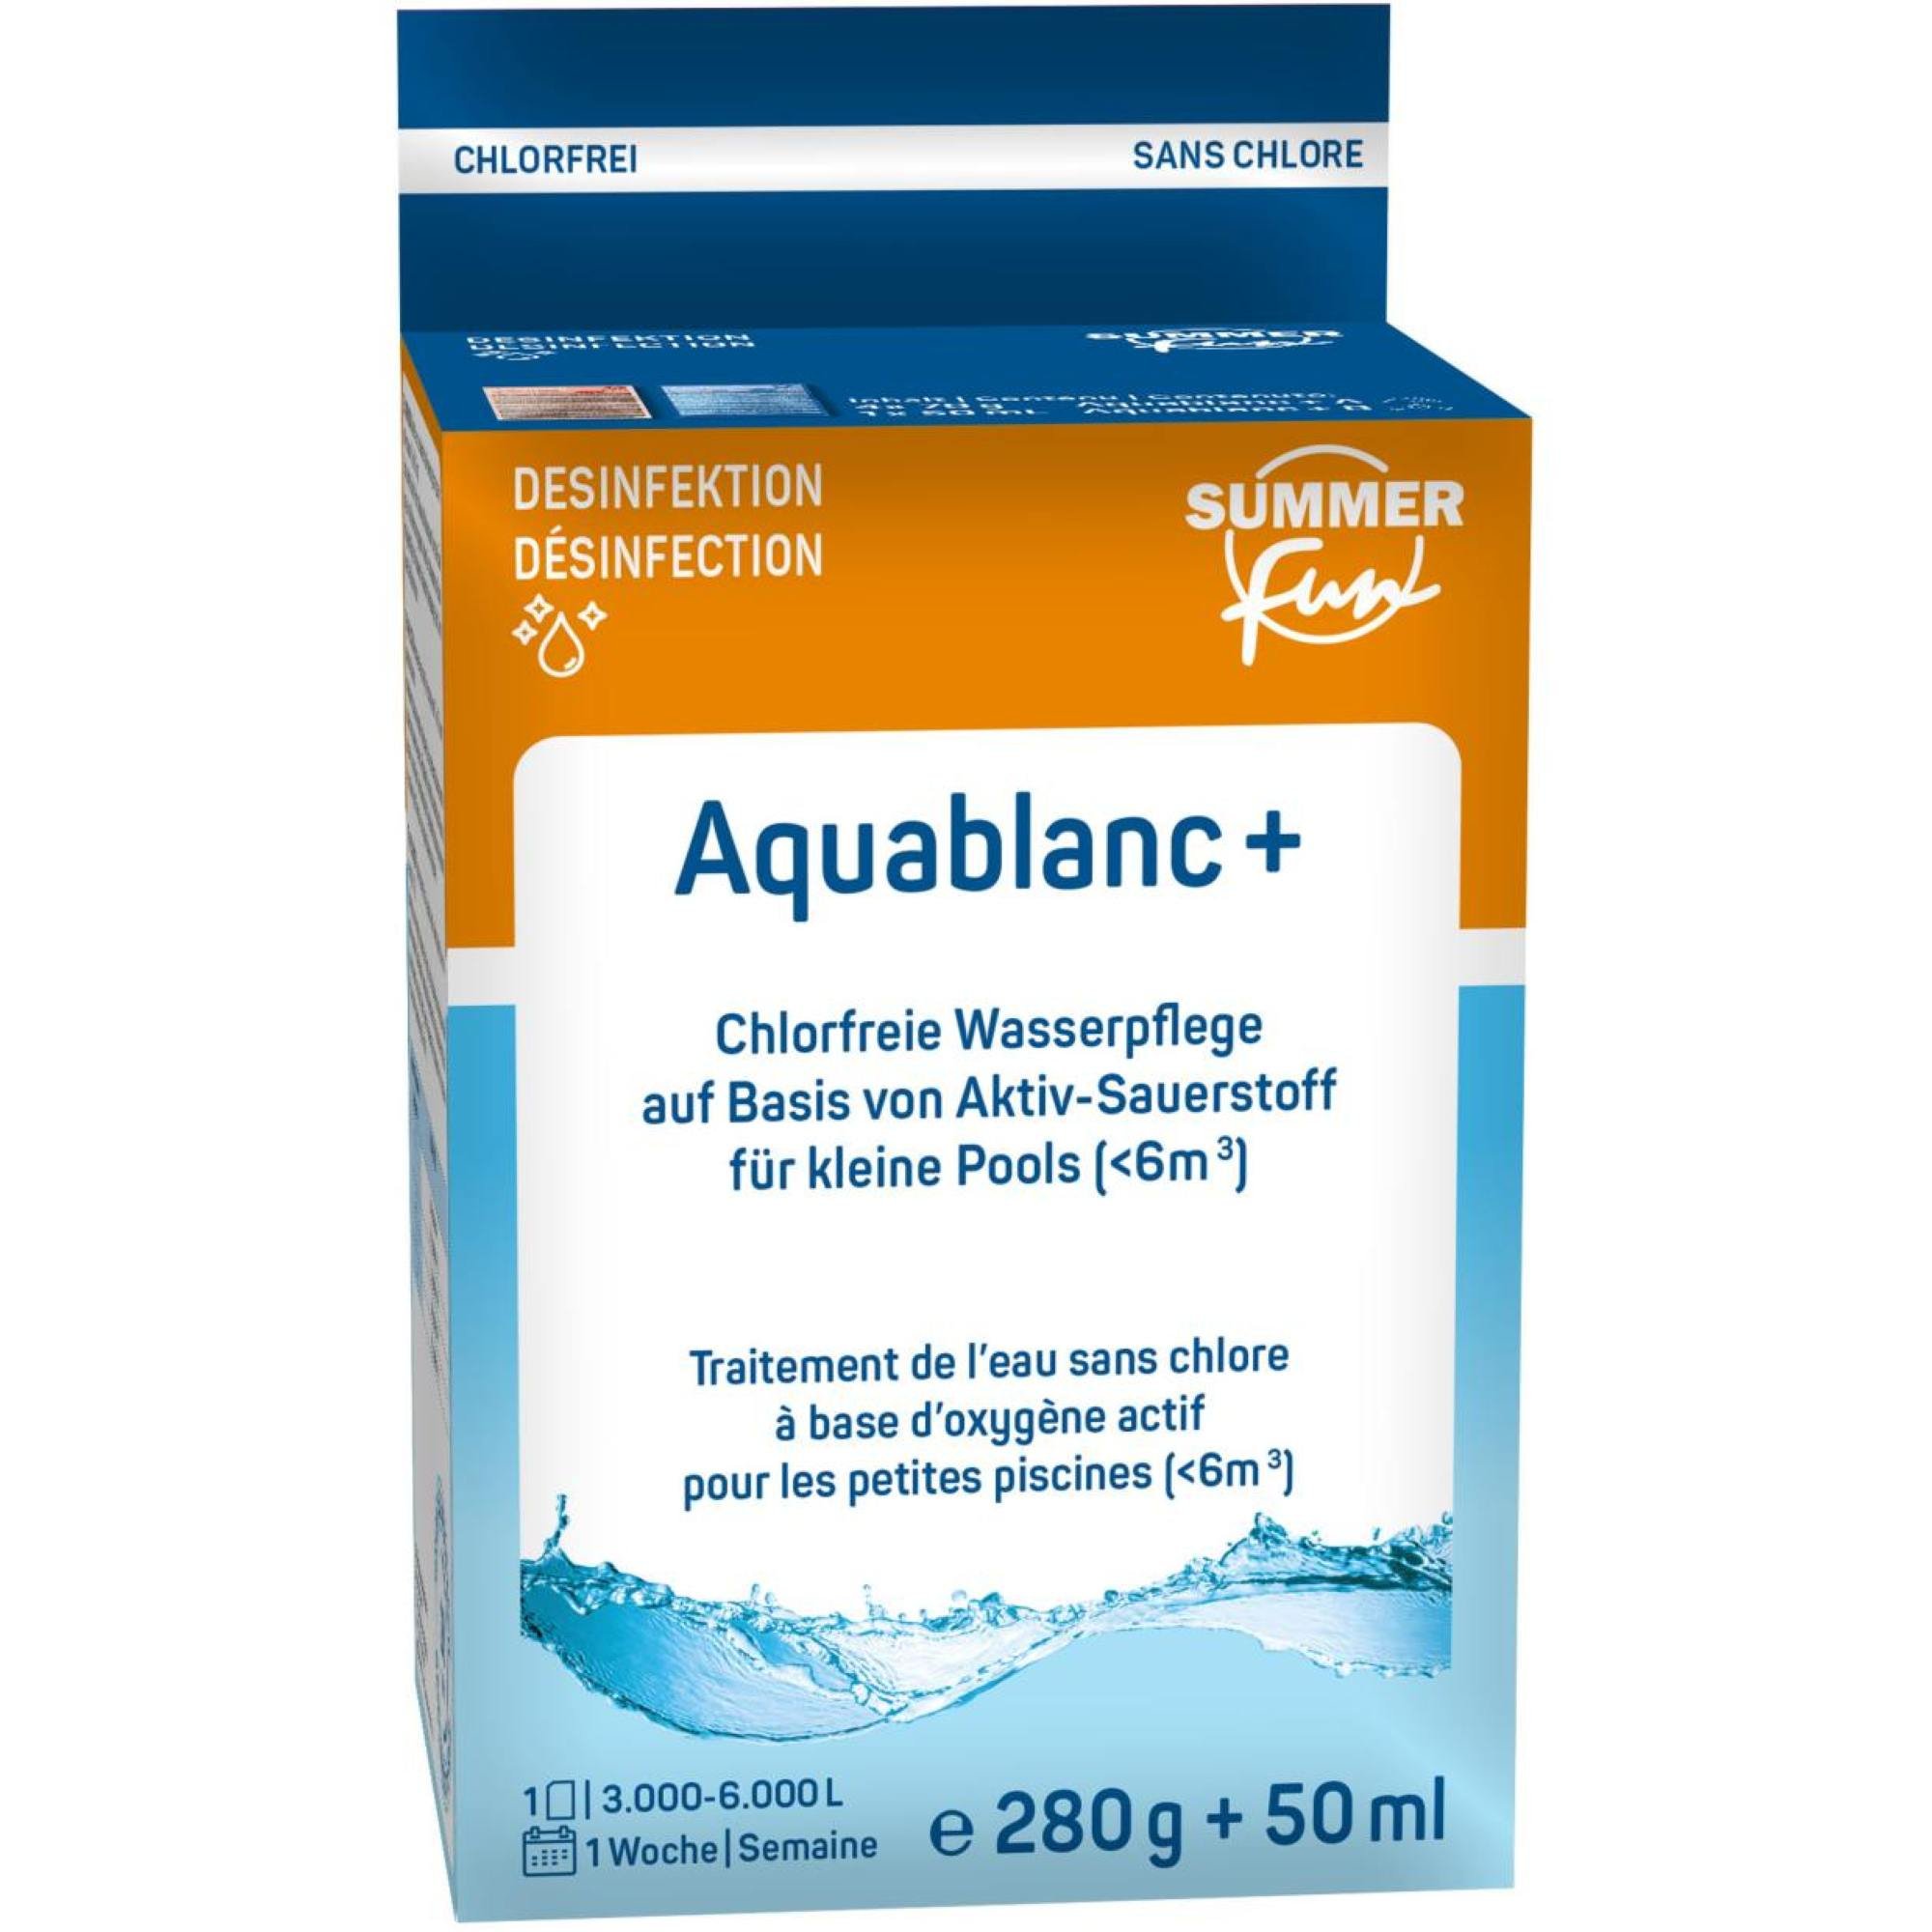 Summer Fun Aquablanc+ - 1x50 ml und 4x50 g